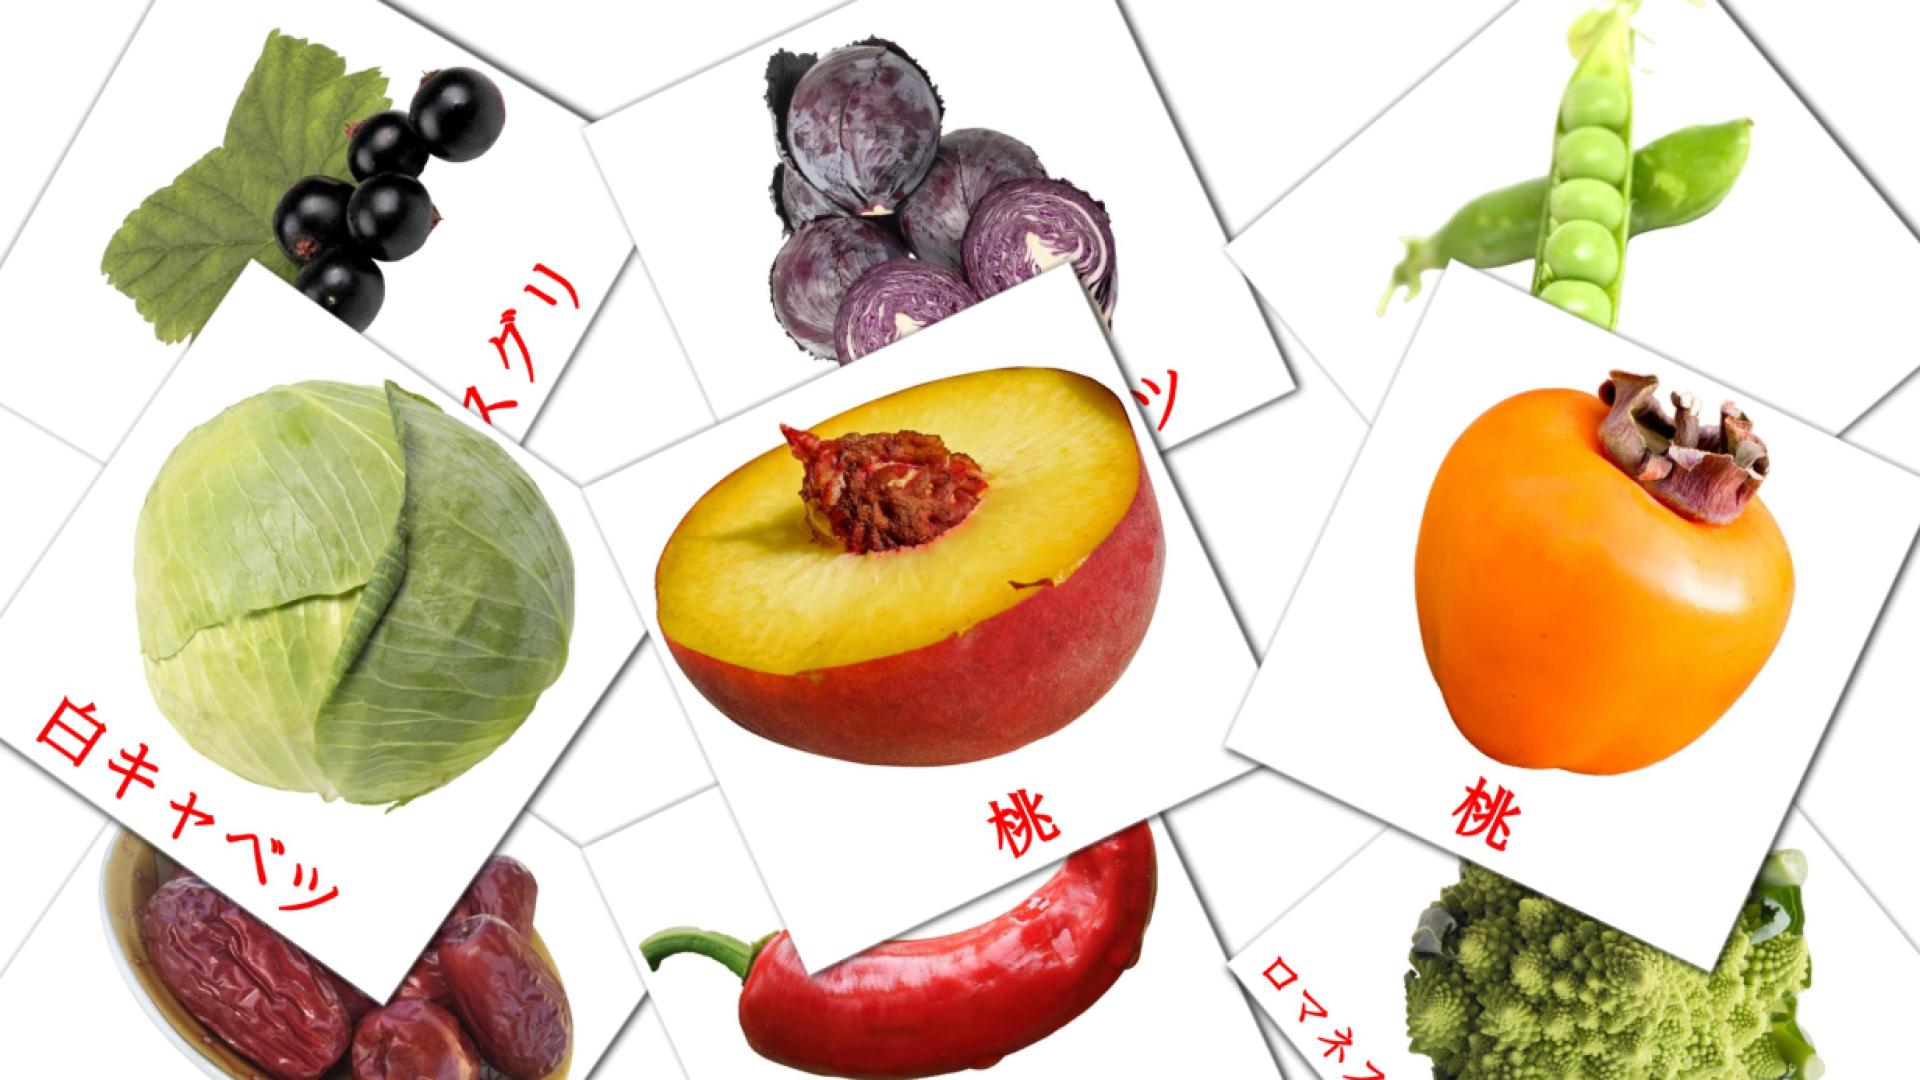 Japanisch 食物 Shokumotsue Vokabelkarteikarten